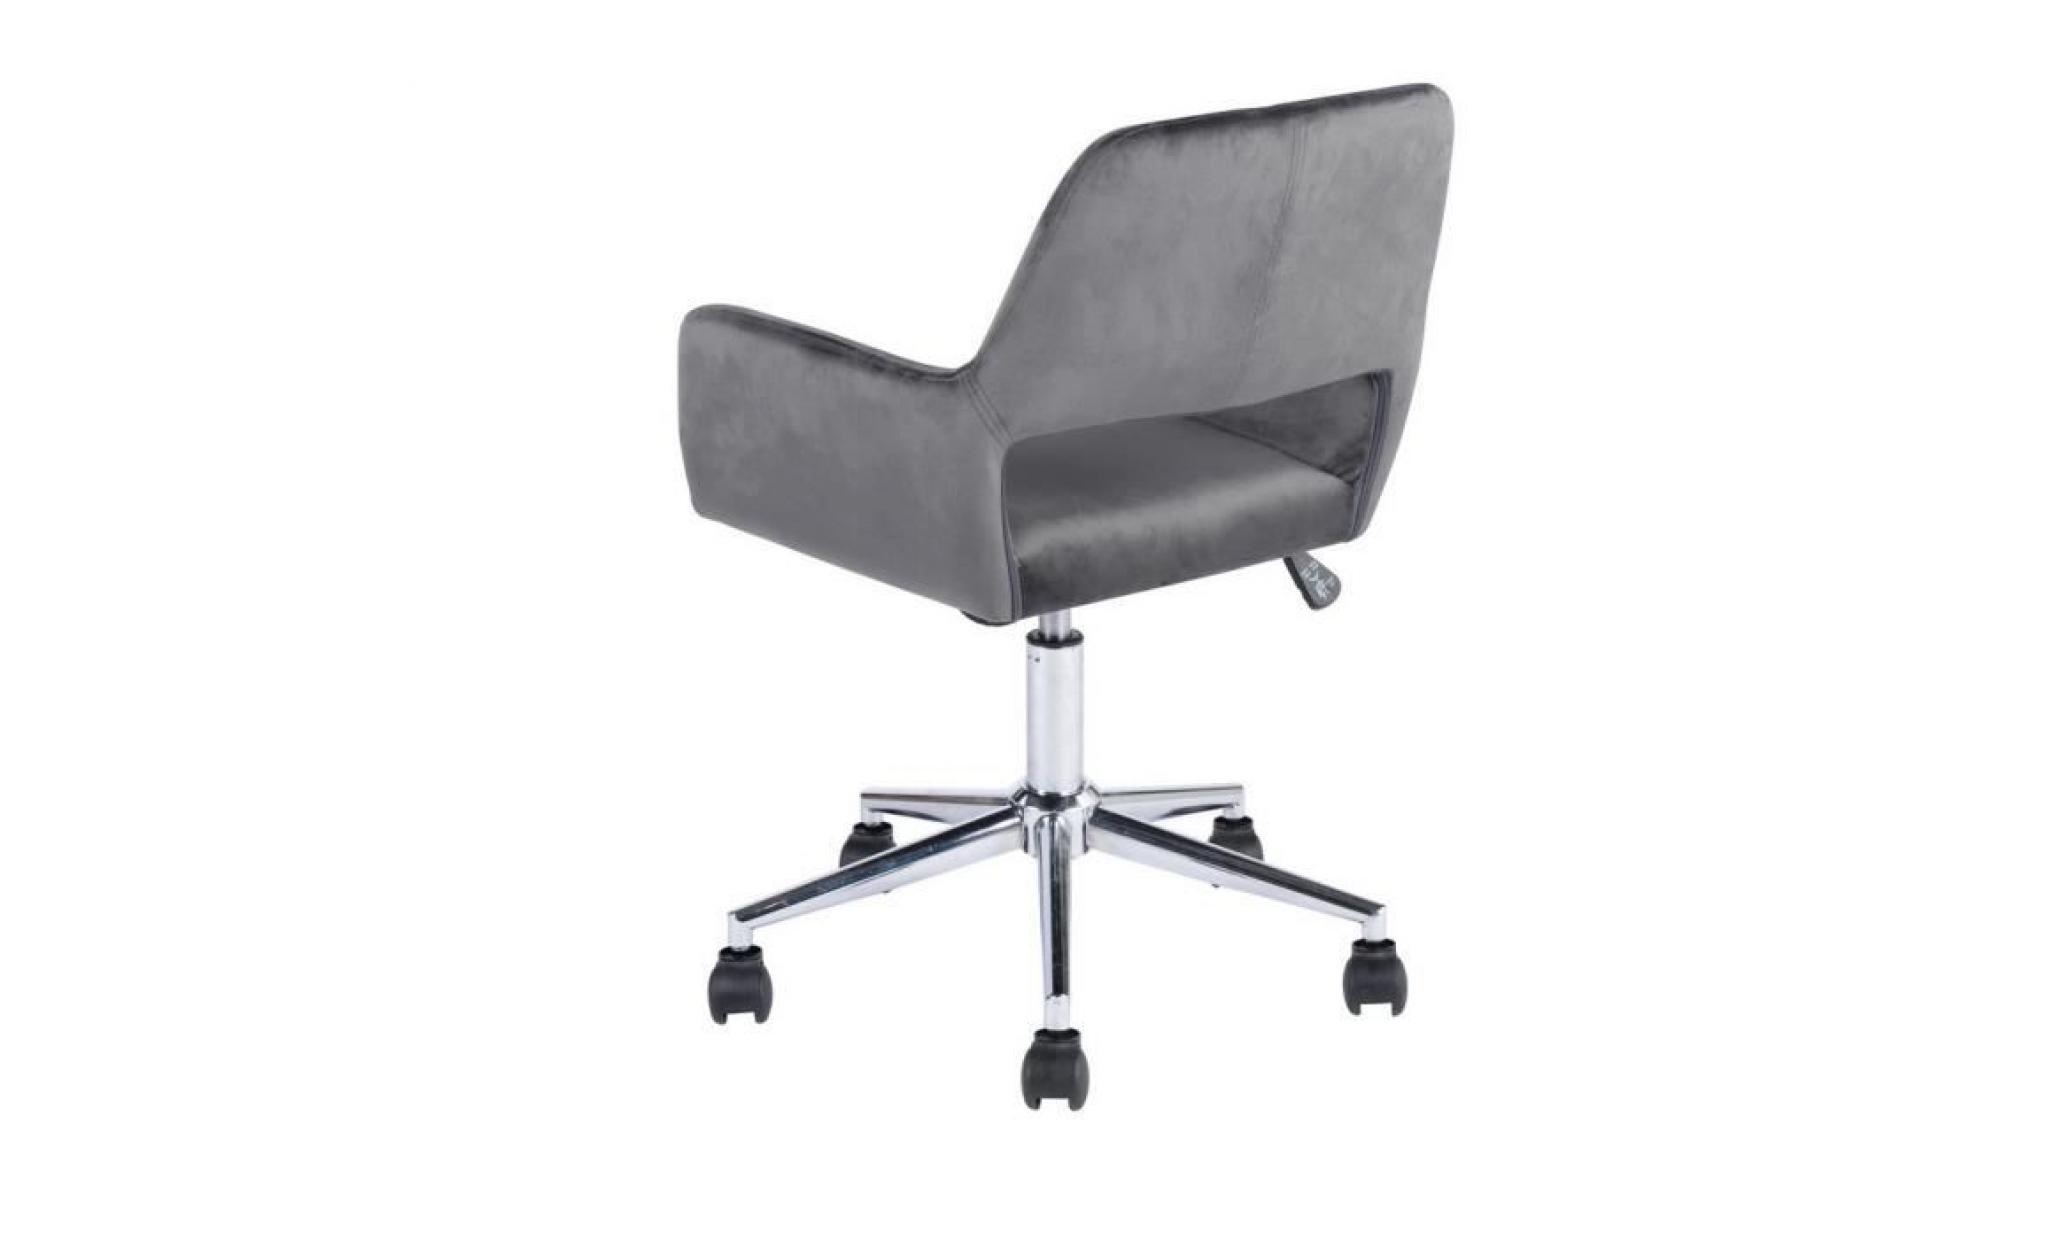 furnish1 computer velvet chair chaise de bureau contemporaine réglage de la hauteur jambes chromées chaise d'ordinateur gris pas cher